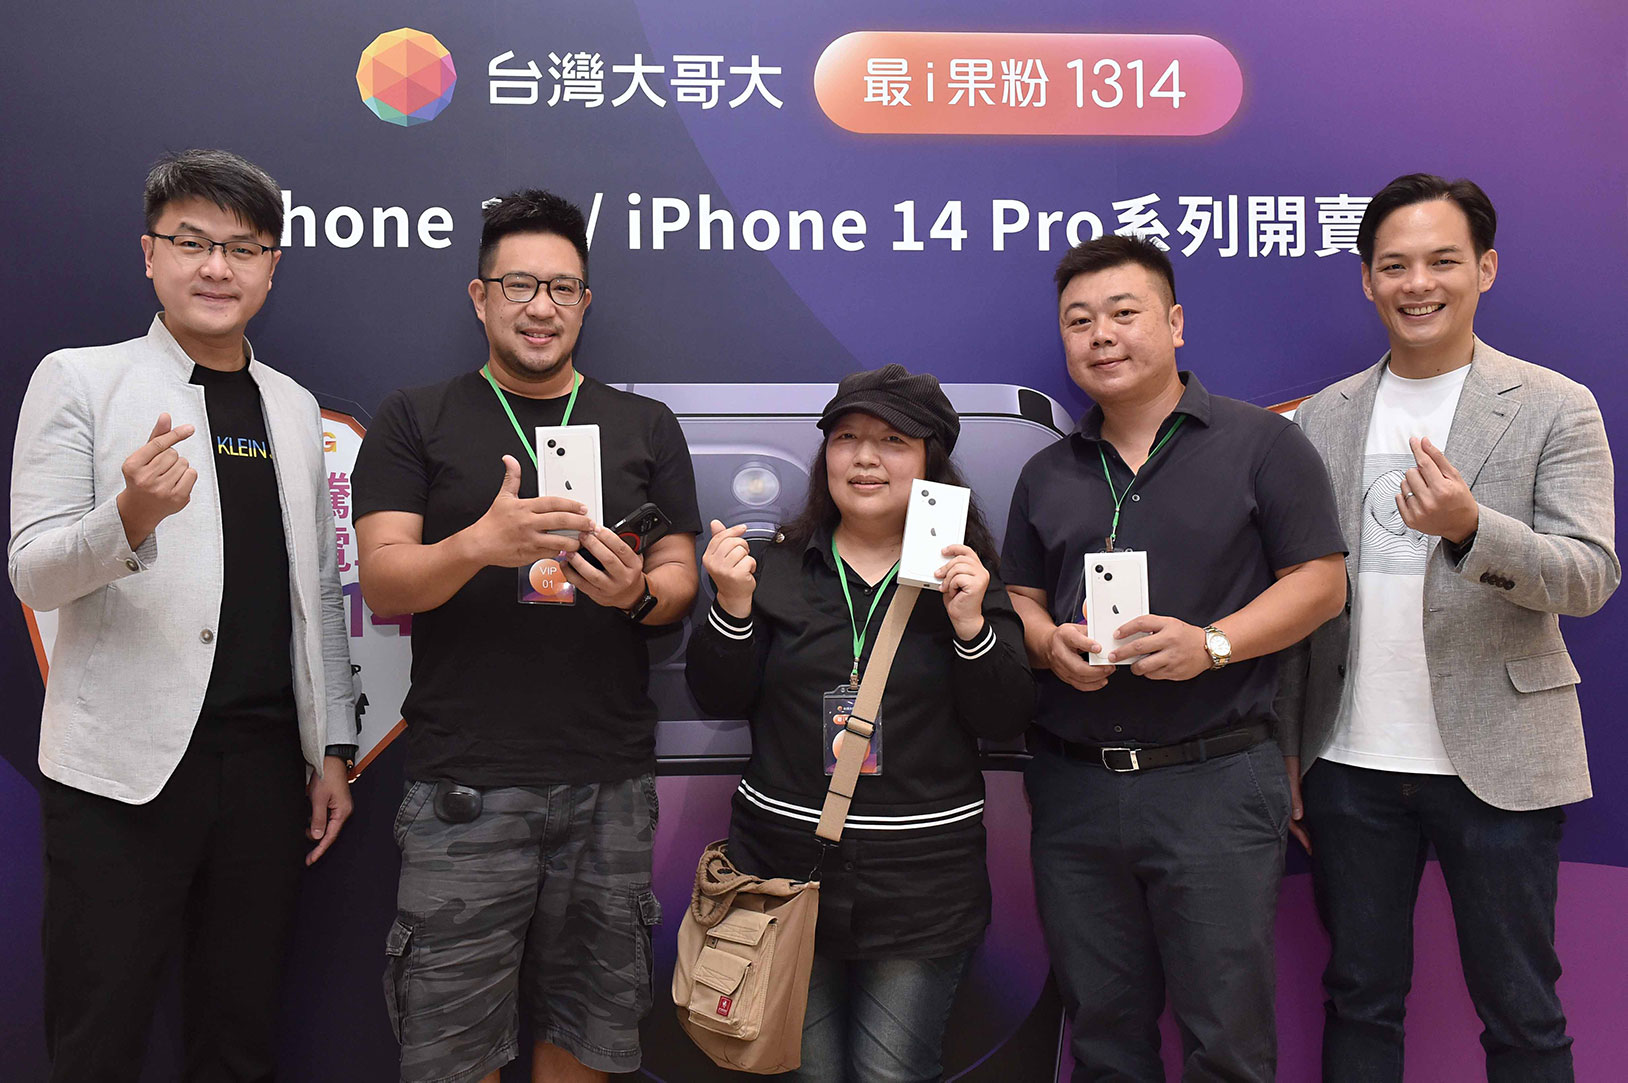 台灣大哥大舉辦「我的 VIP 驚喜派對」，抽出 14 位申辦 iPhone 14 的果粉用戶參加活動，並由林之晨總經理 (右 1) 與商務長林東閔 (左 1) 從抽出 3 位幸運果粉，送出 iPhone 13，代表台灣大愛果粉 1314 (諧音)。